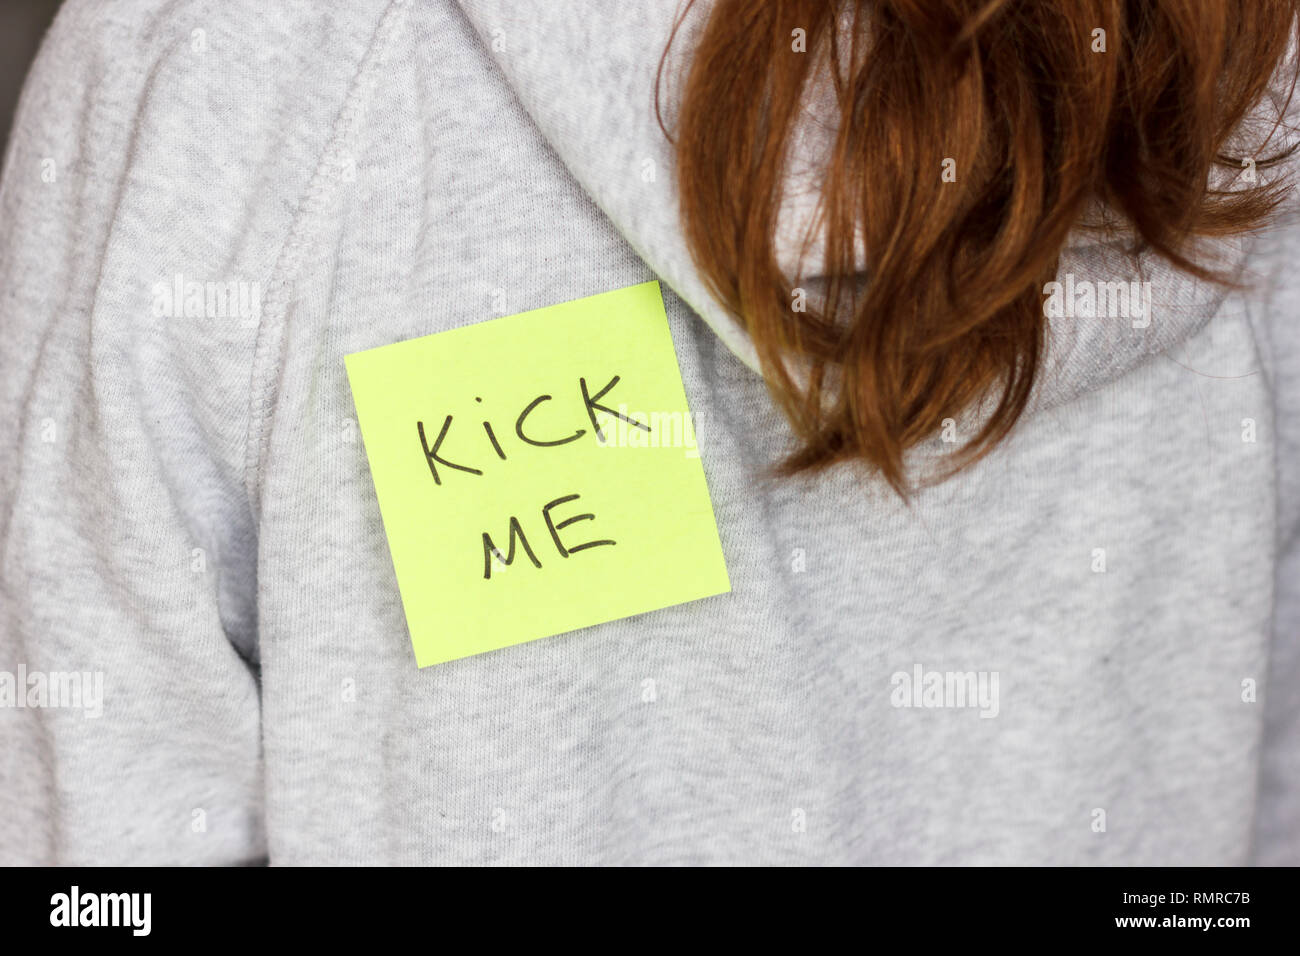 Aufkleber 'Kick me' auf jugendliche Mädchen zurück. 1. april Scherz  Stockfotografie - Alamy